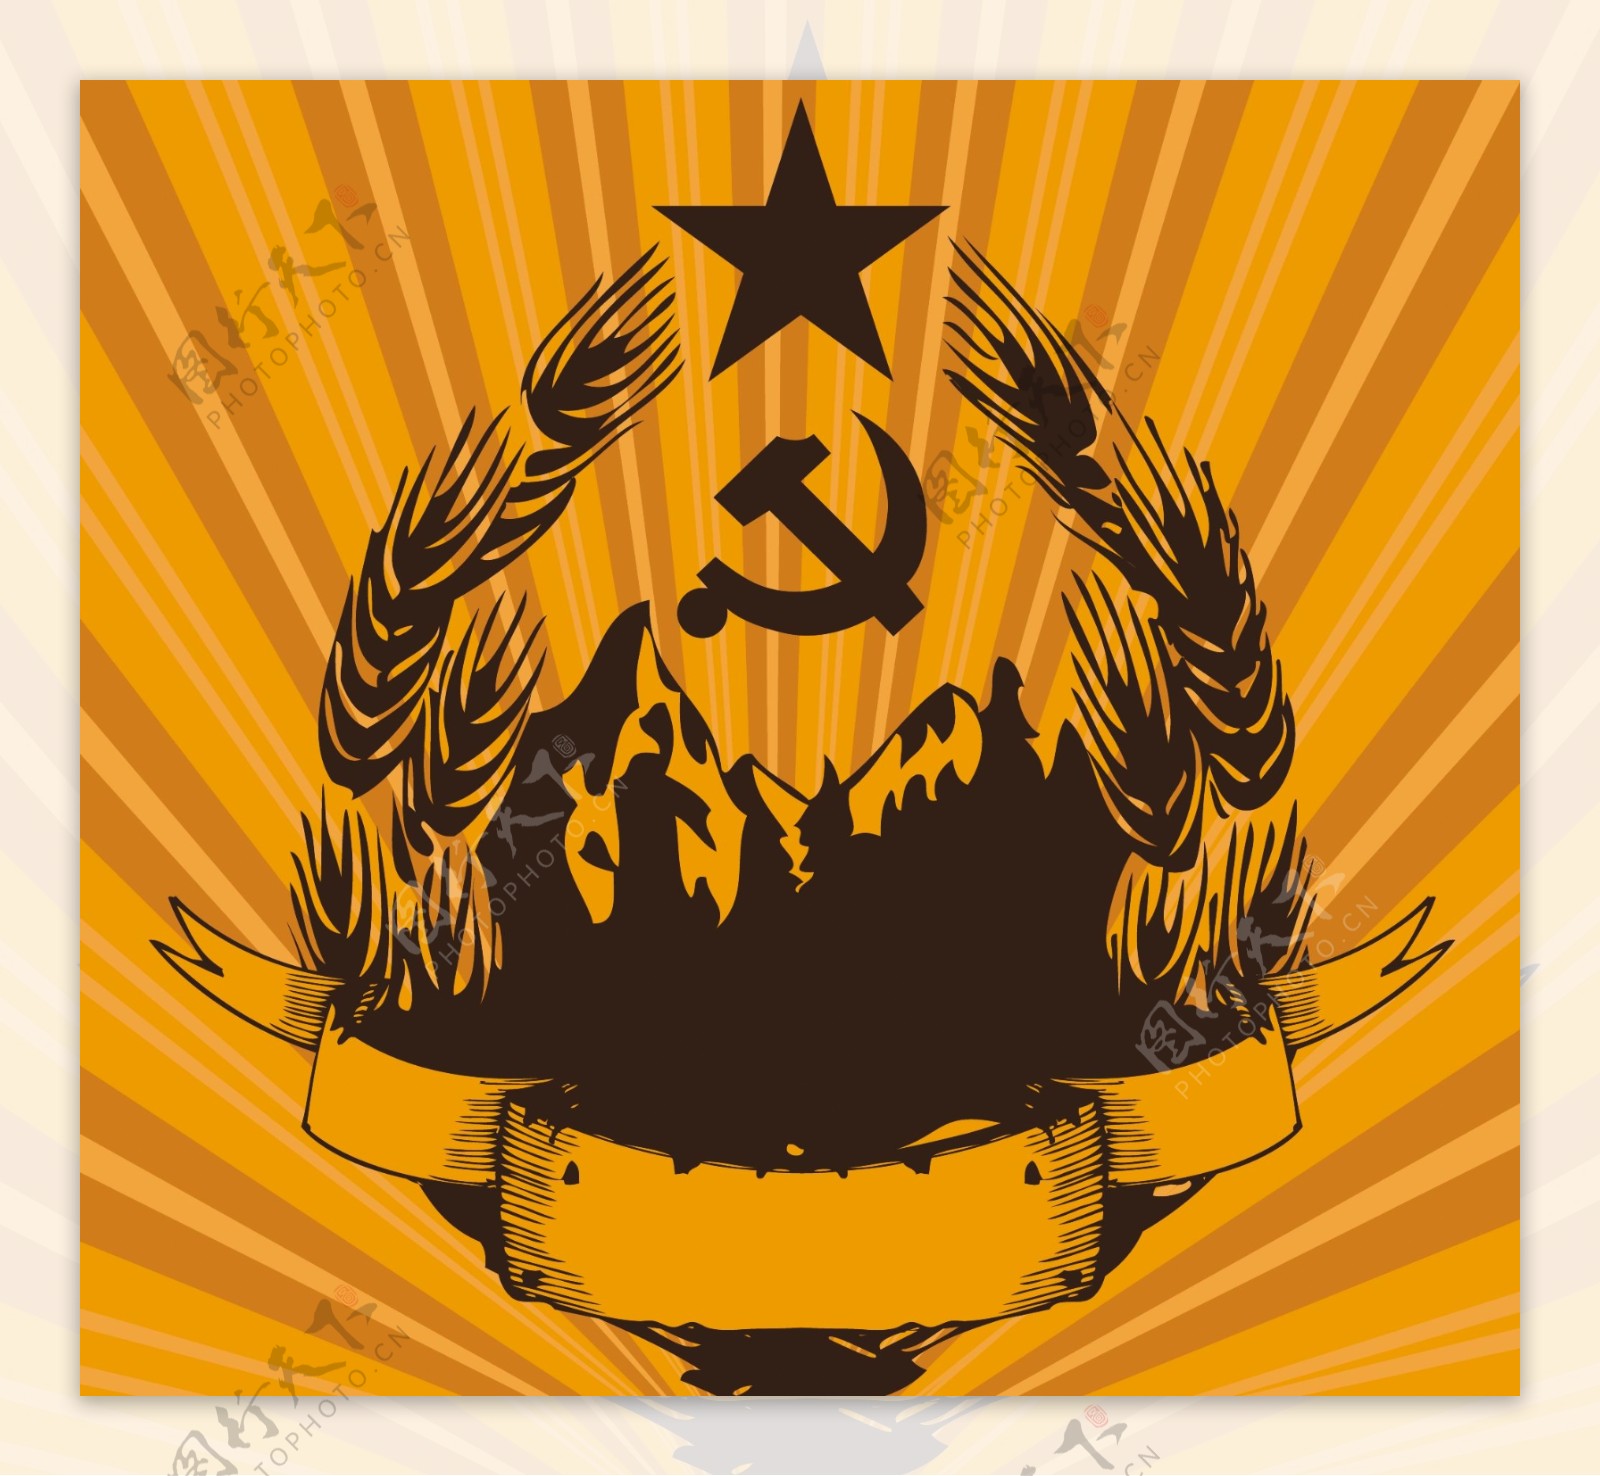 共产主义的海报